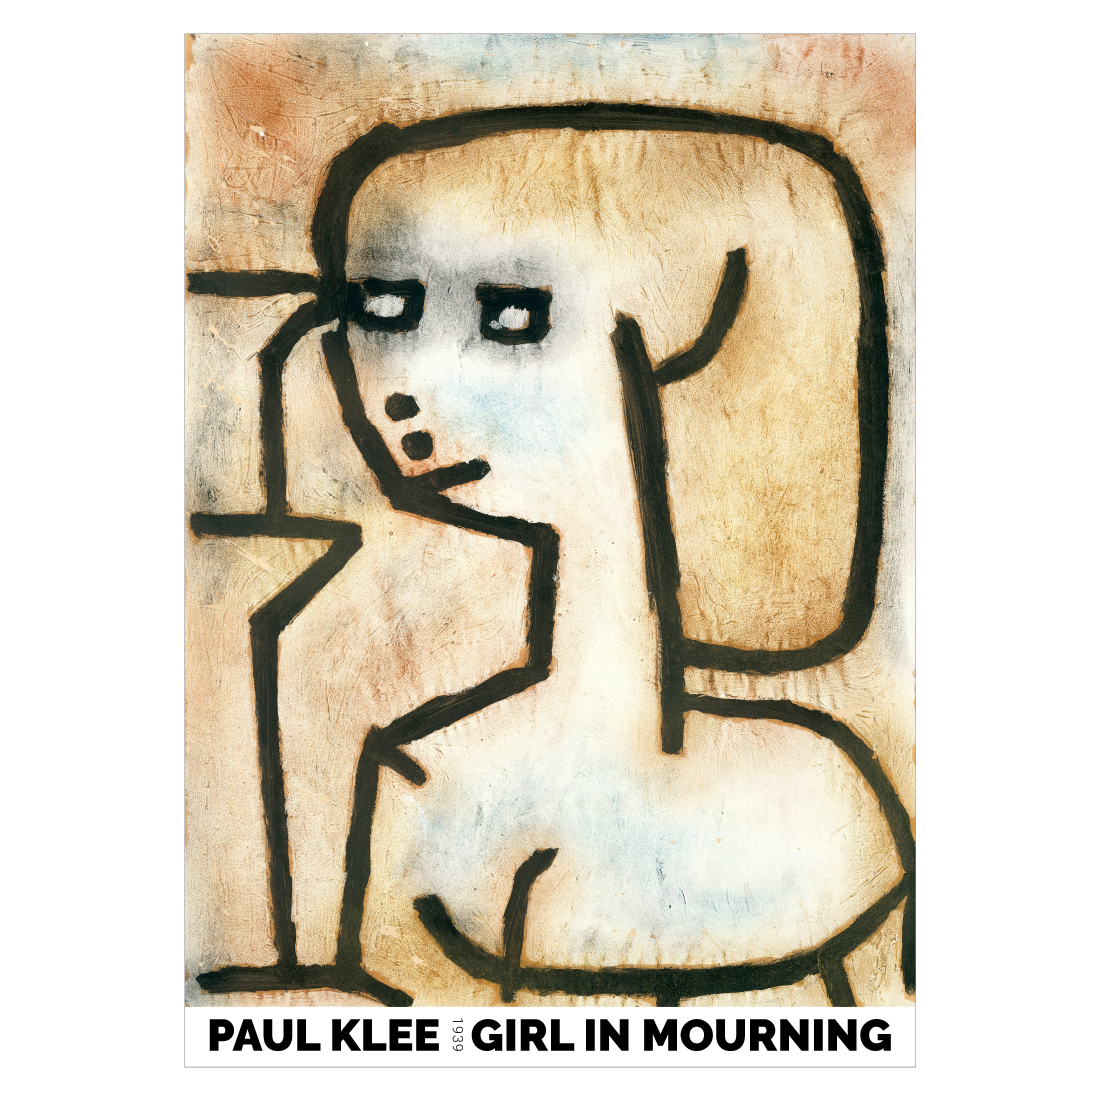 Kunstplakat med "Girl in Mourning" af Paul Klee